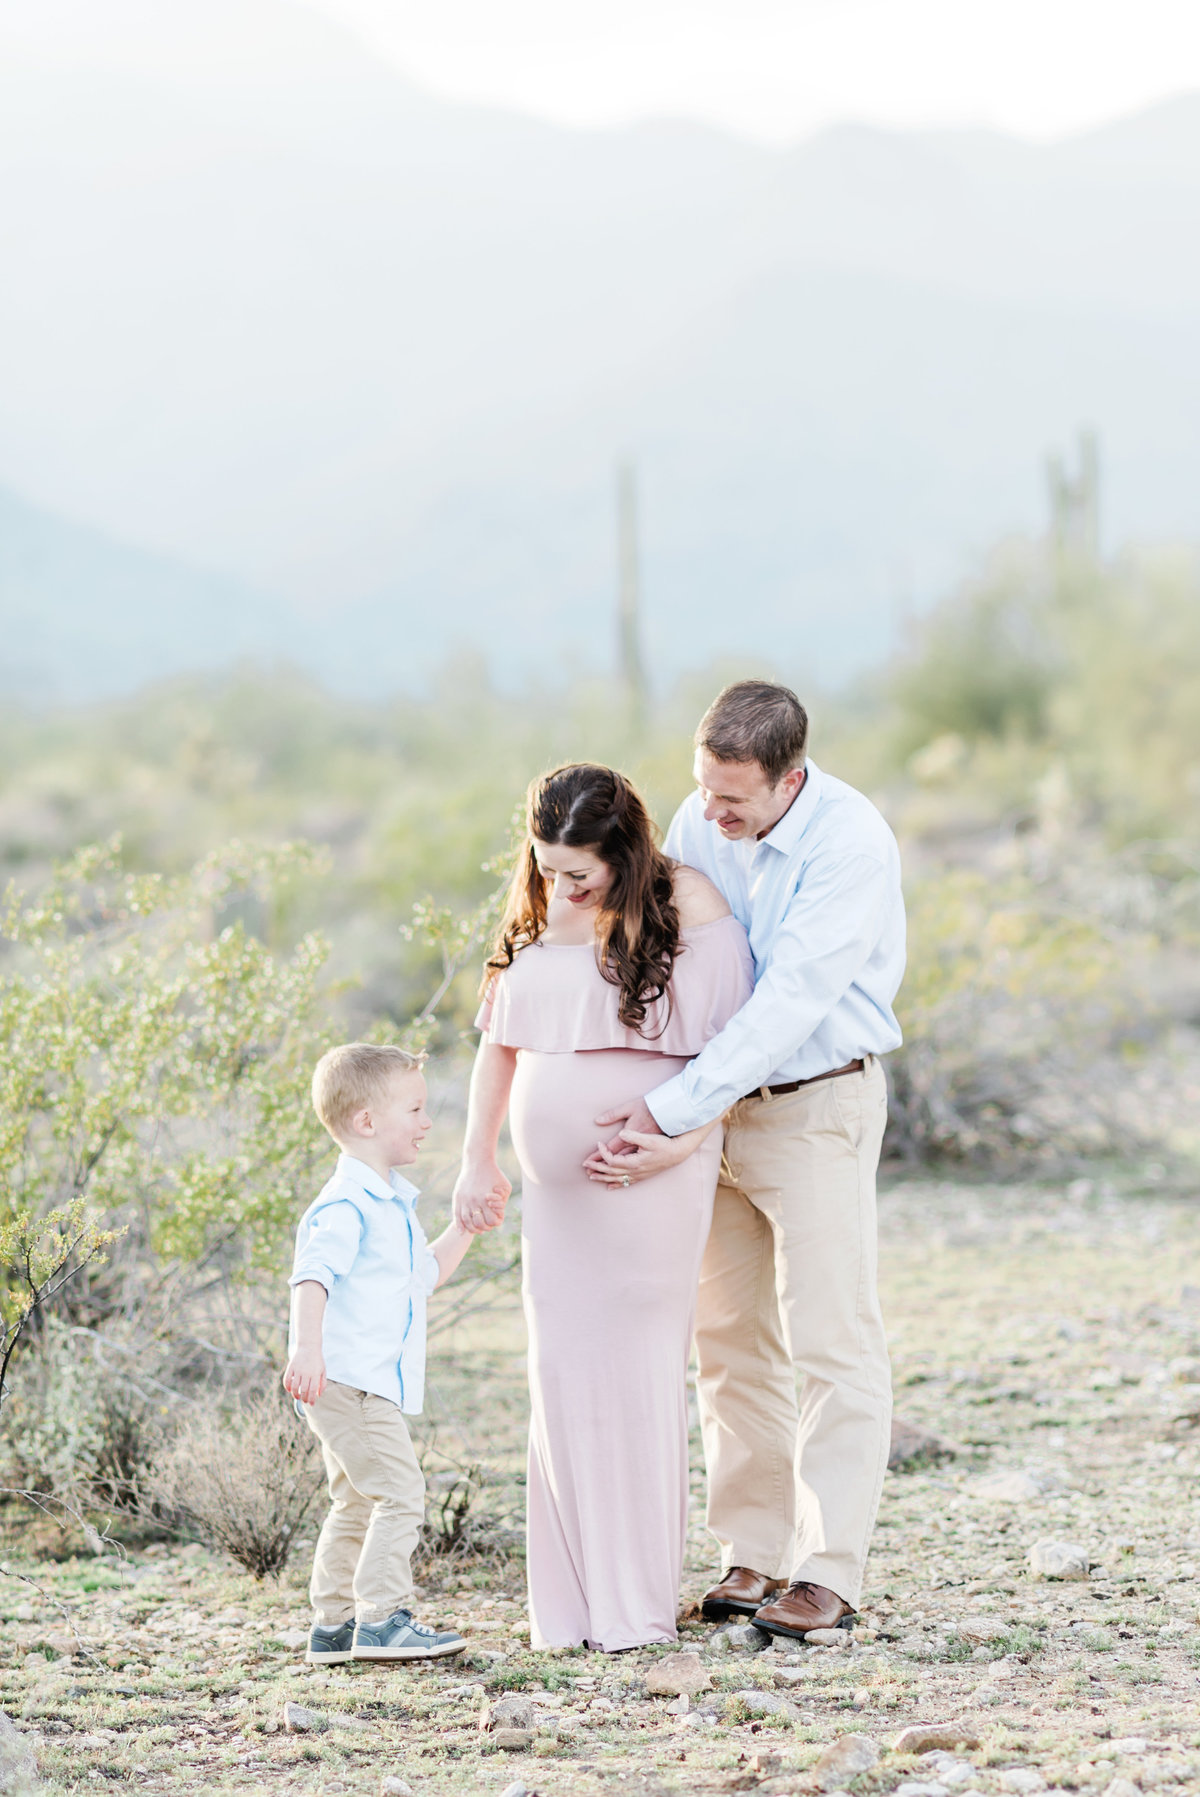 Wheeler's-Maternity-Family-Session-Waddell-Arizona-Ashley-Flug-Photography02